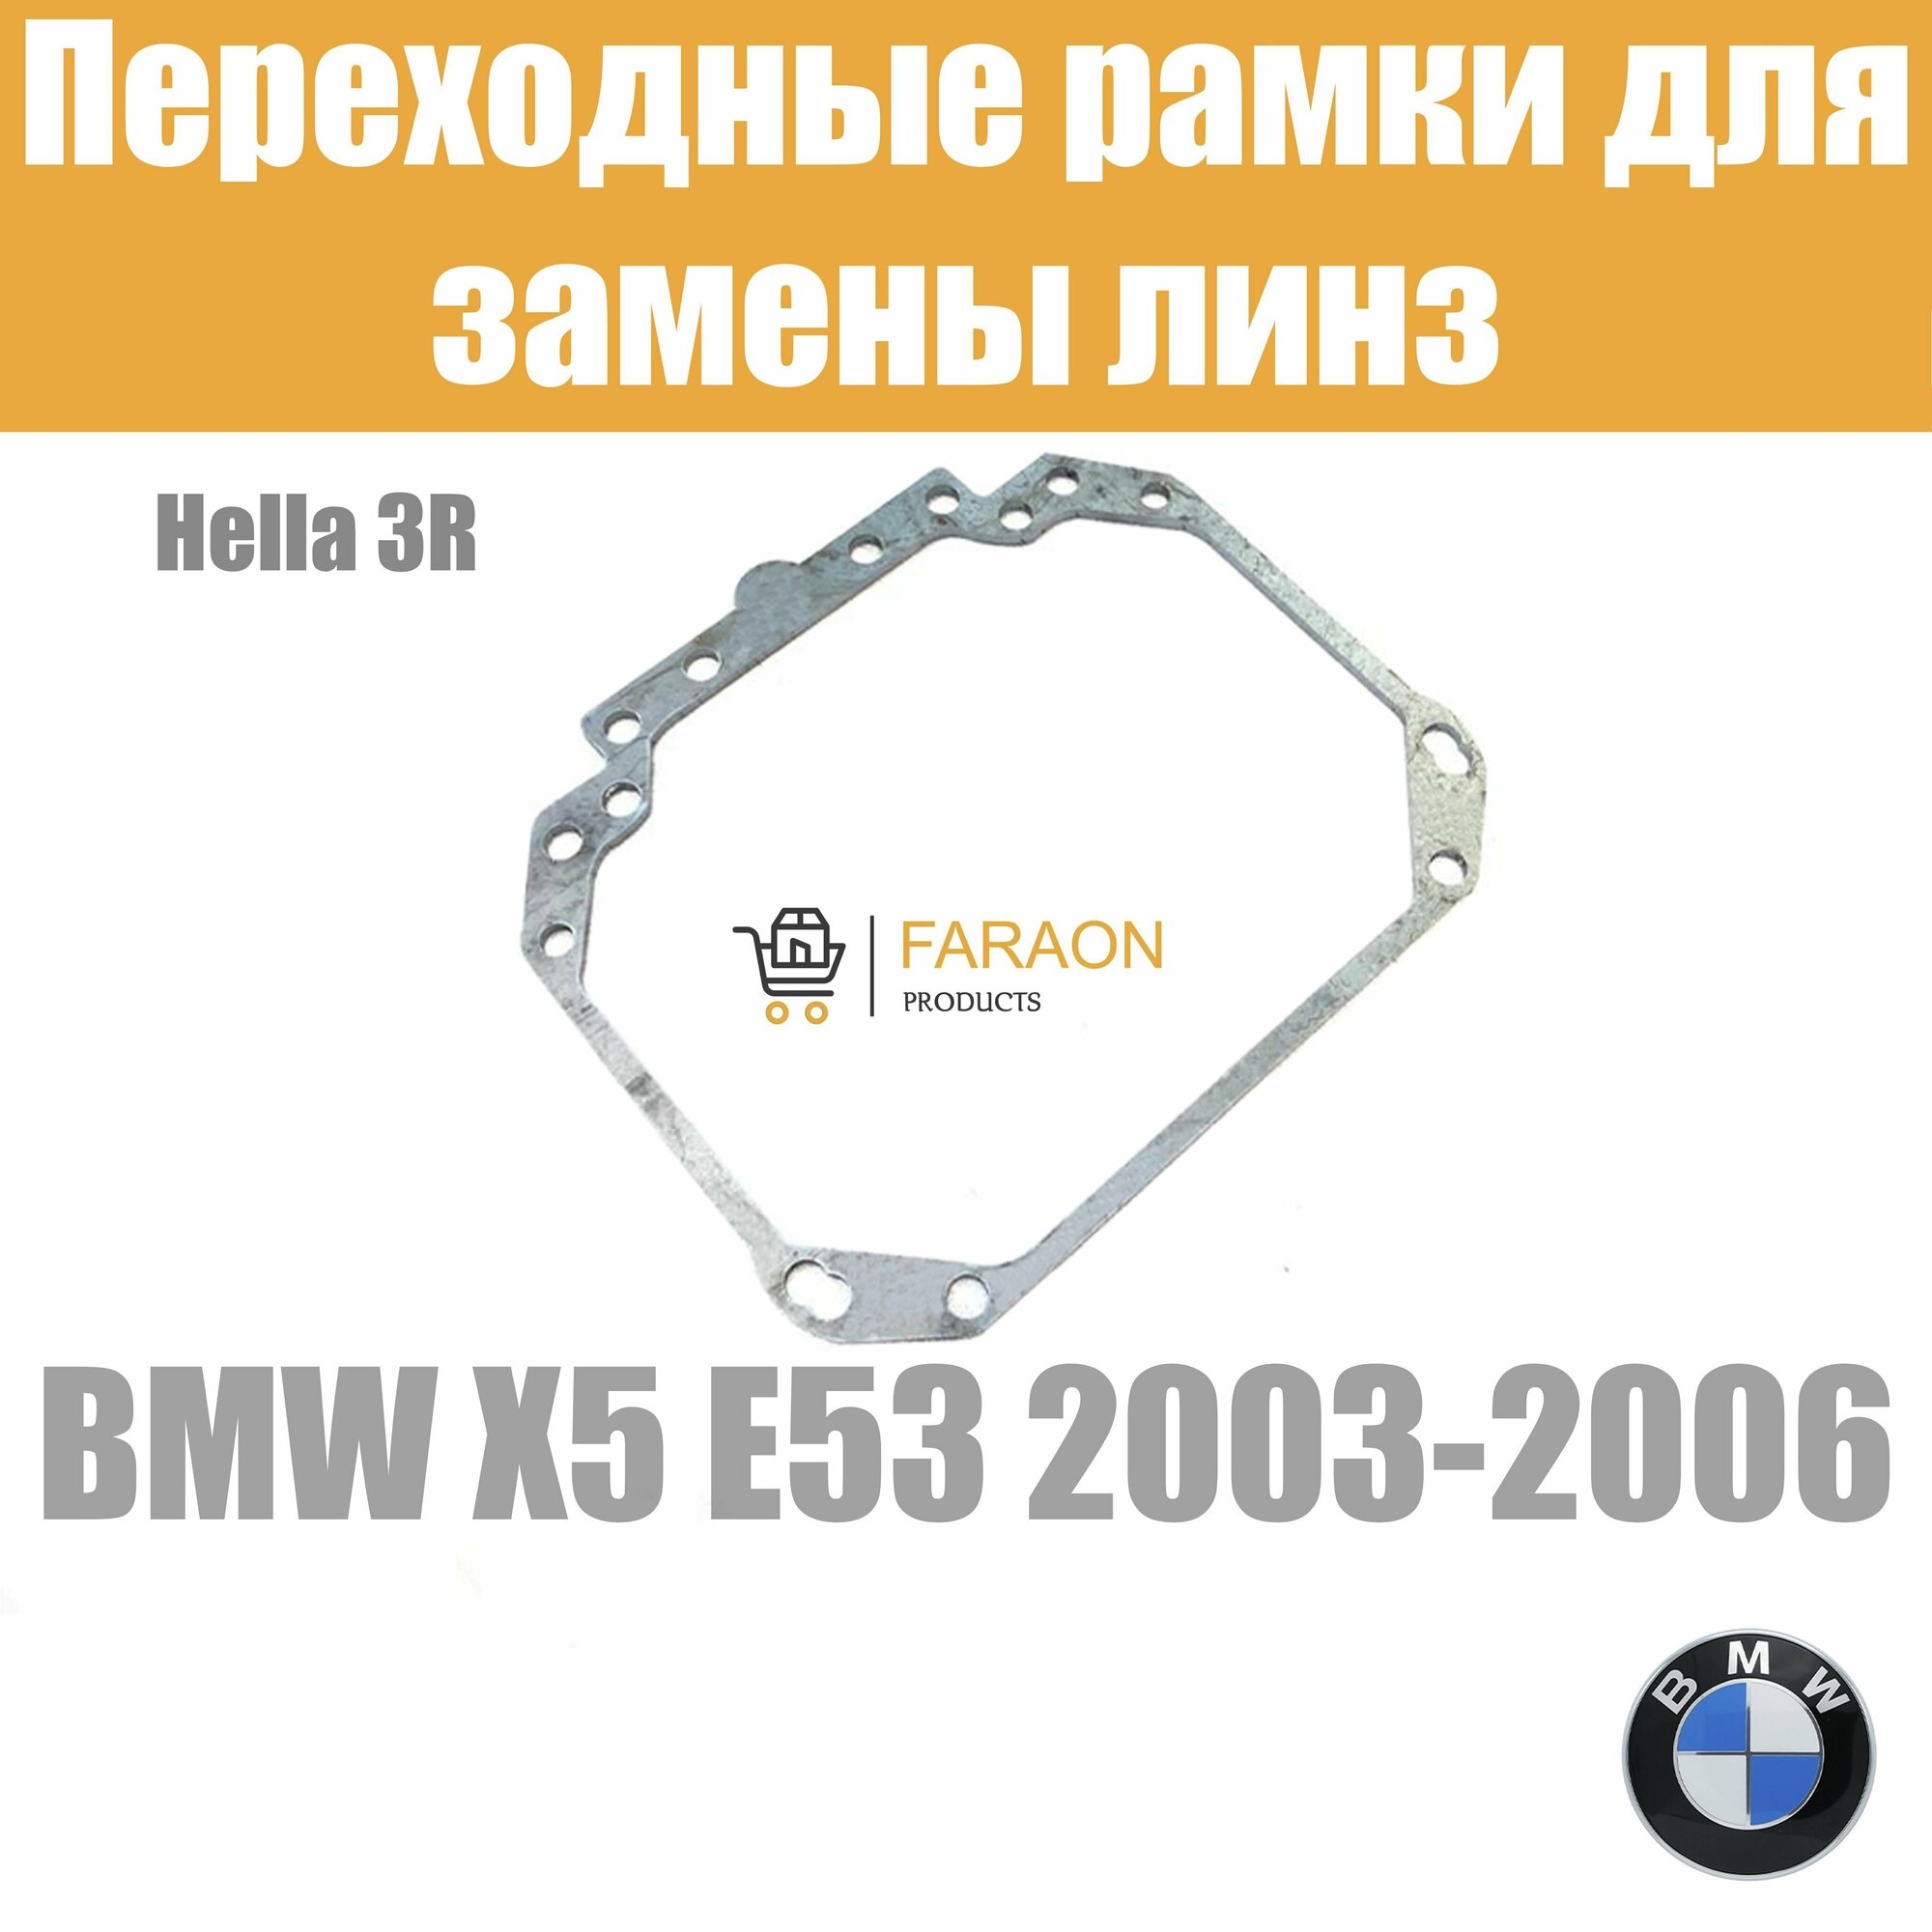 Переходные рамки для замены линз №1 на BMW X5 E53 2003-2006 Крепление Hella 3R